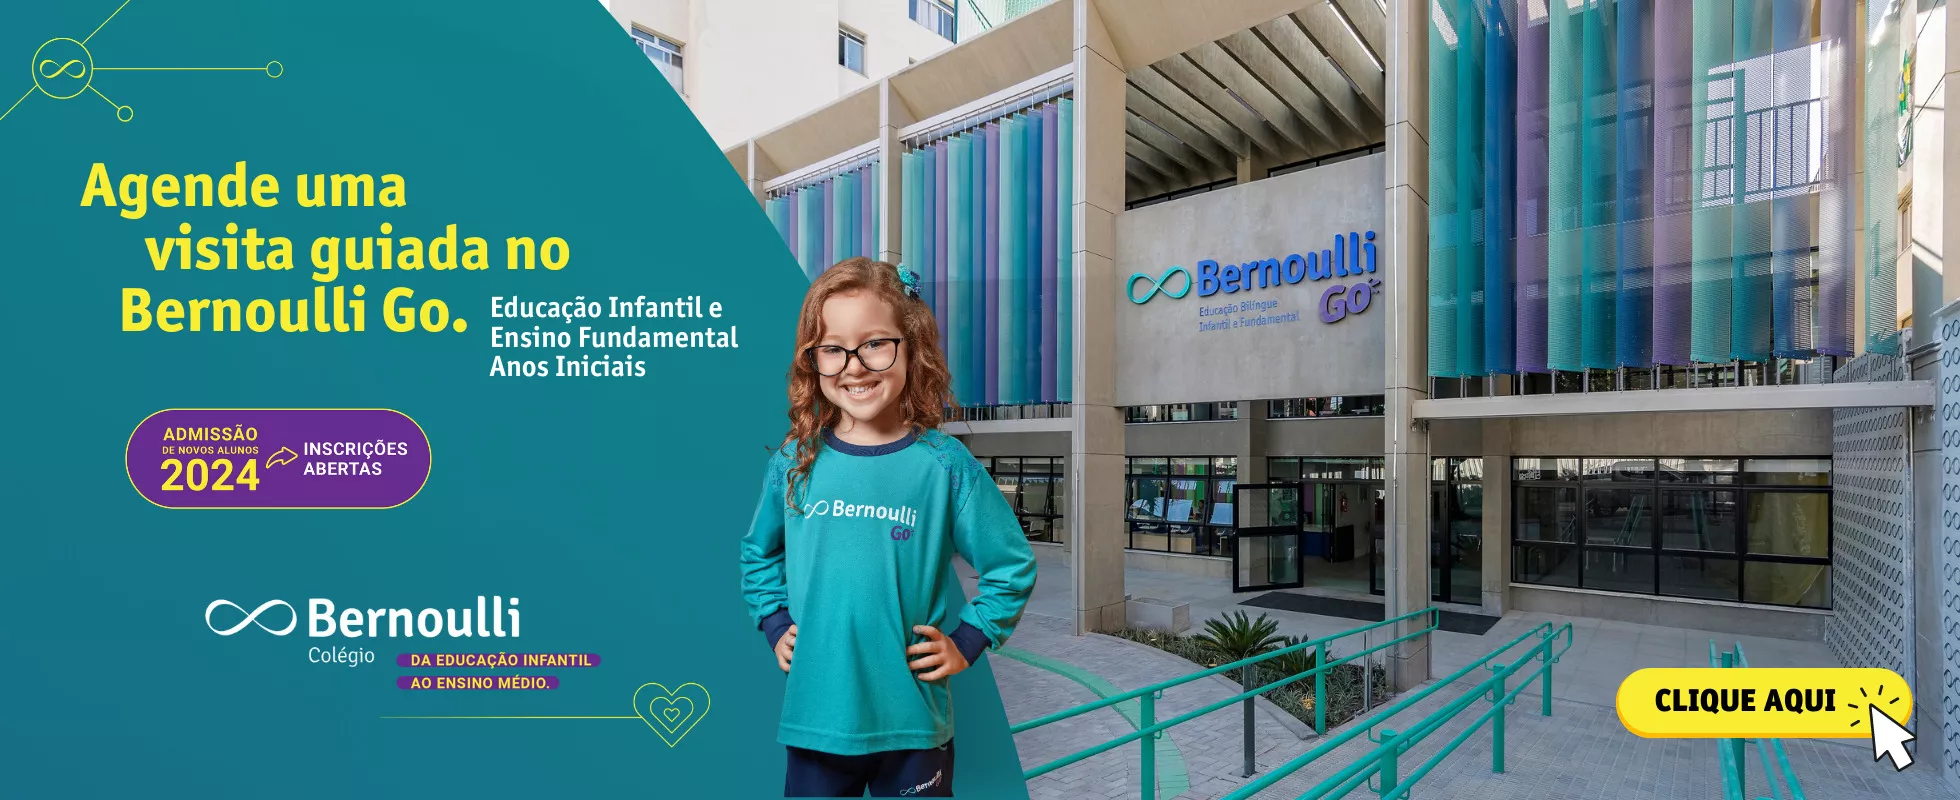 Banner com foto de um aluno e a fachada do Colégio para divulgar a visita guiada no Bernoulli Go. Clique para agendar.